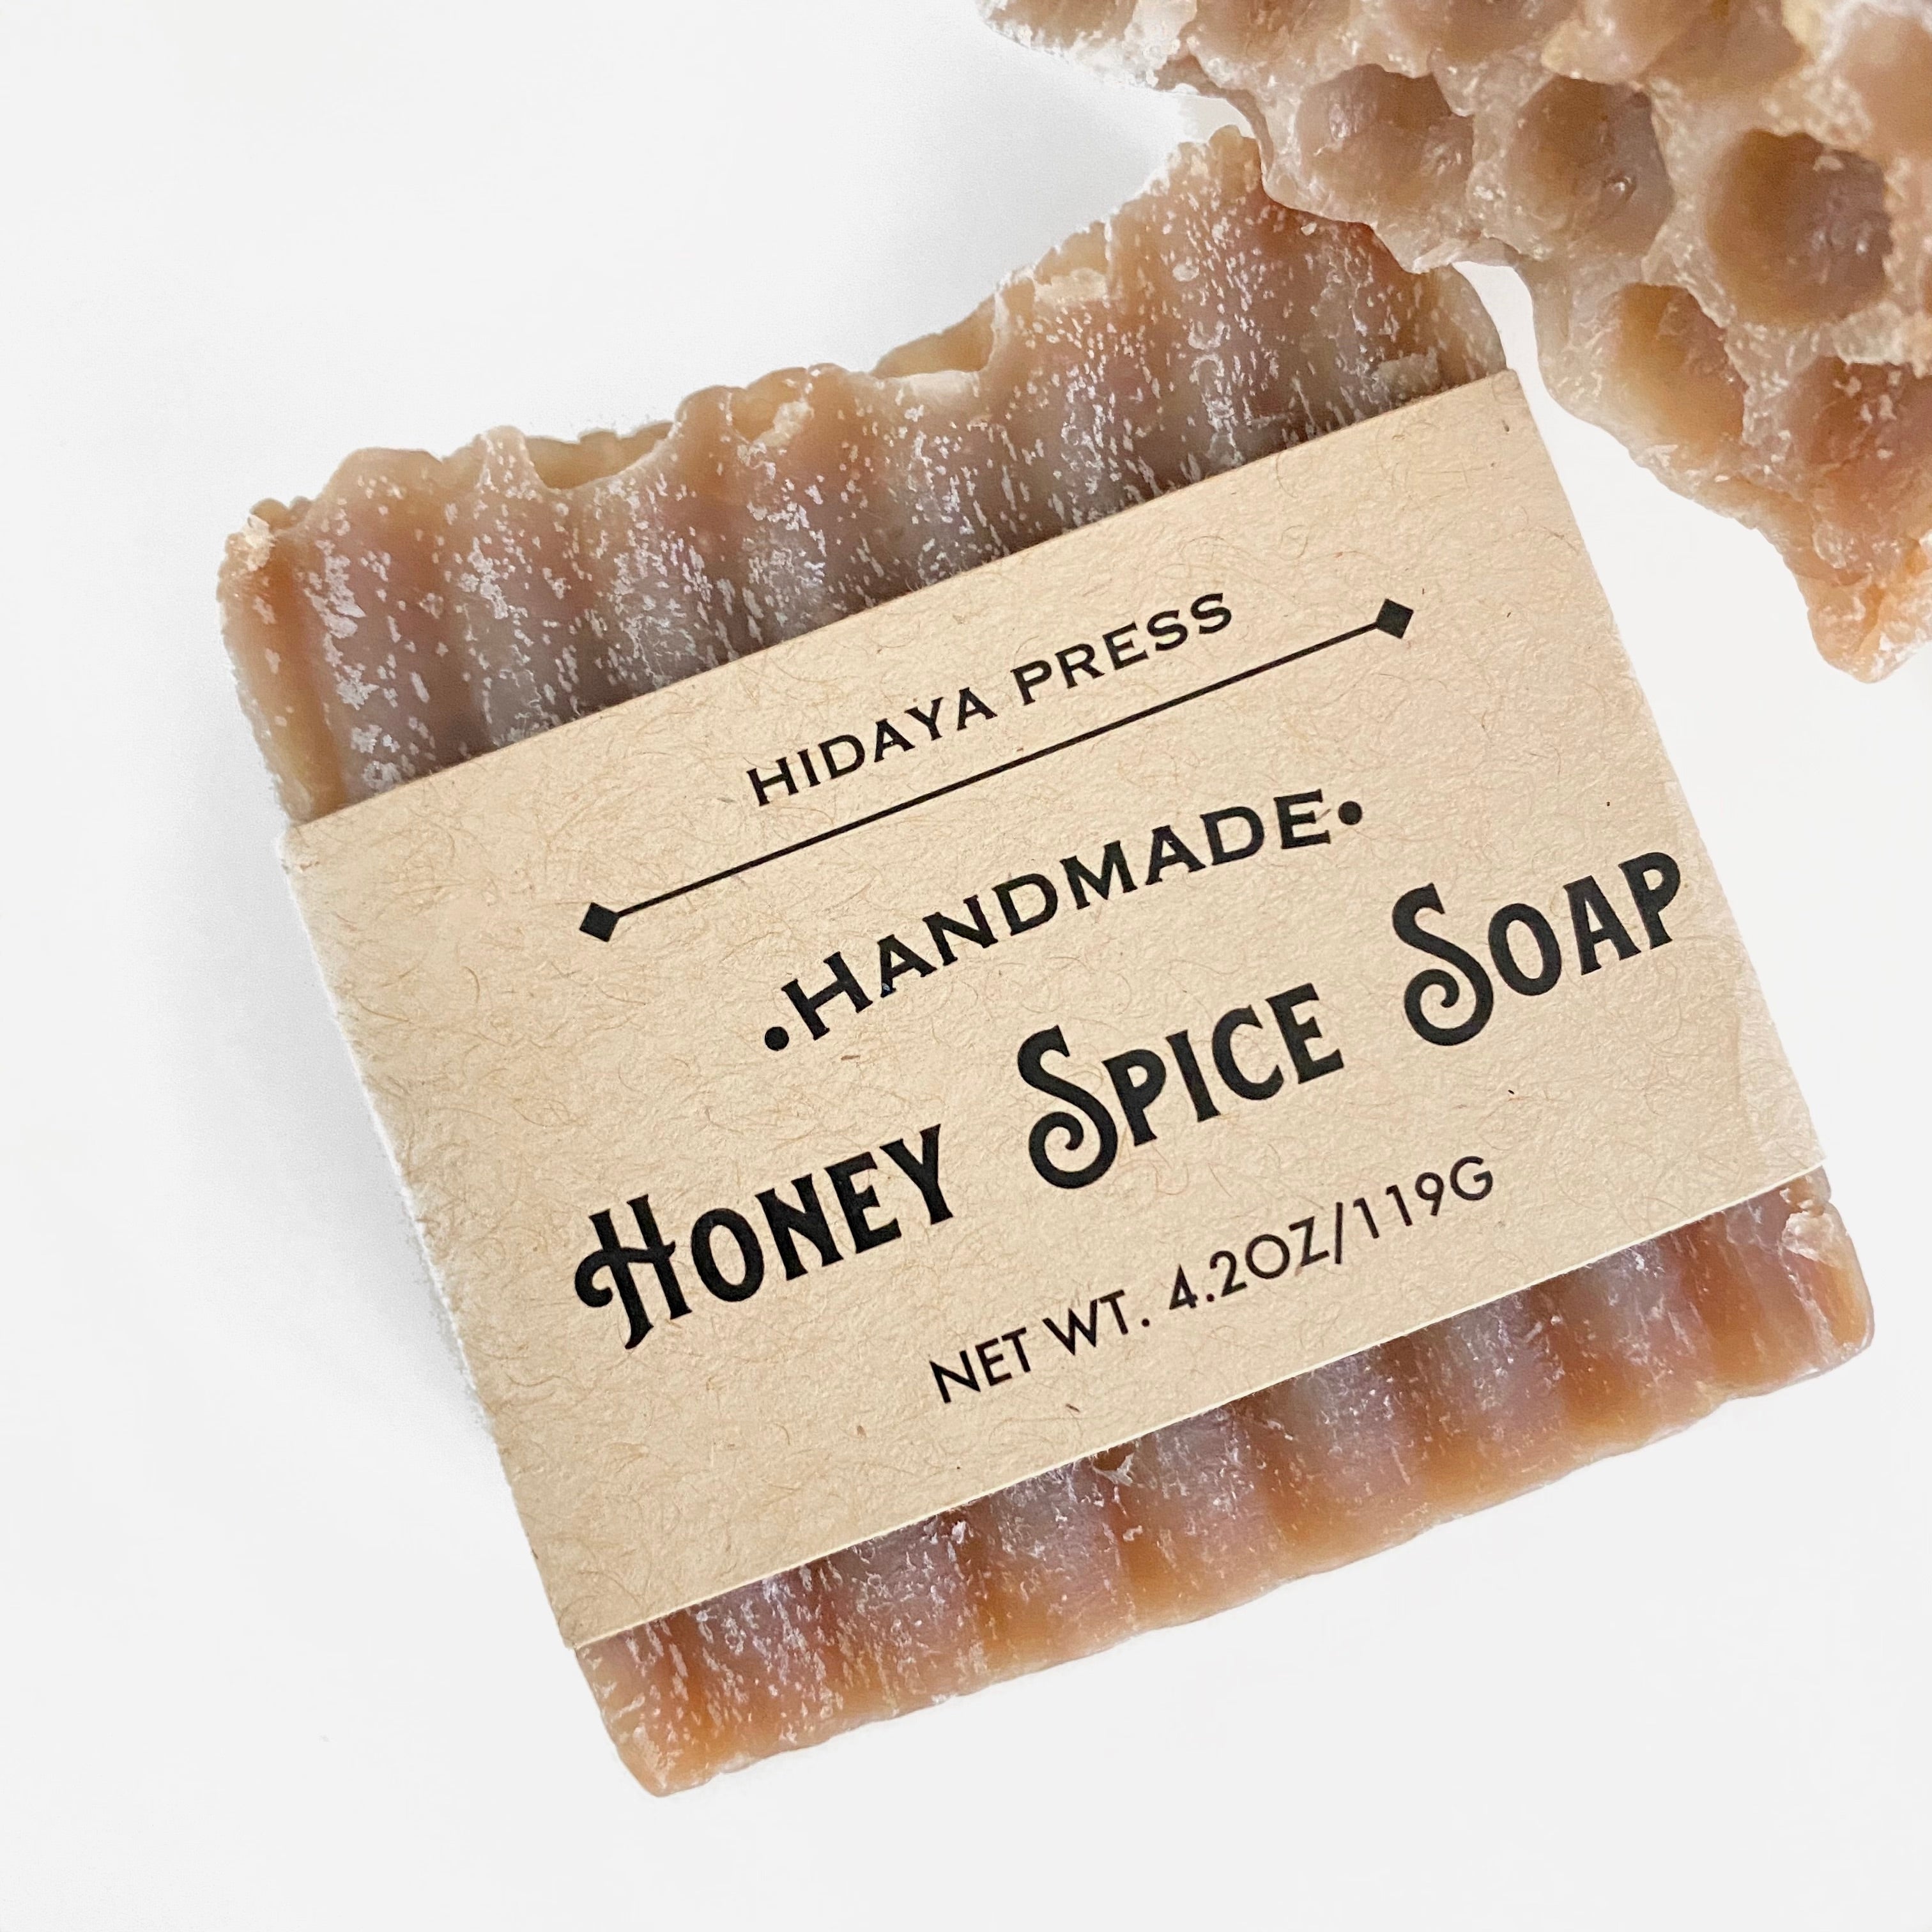 Honey Spice Soap